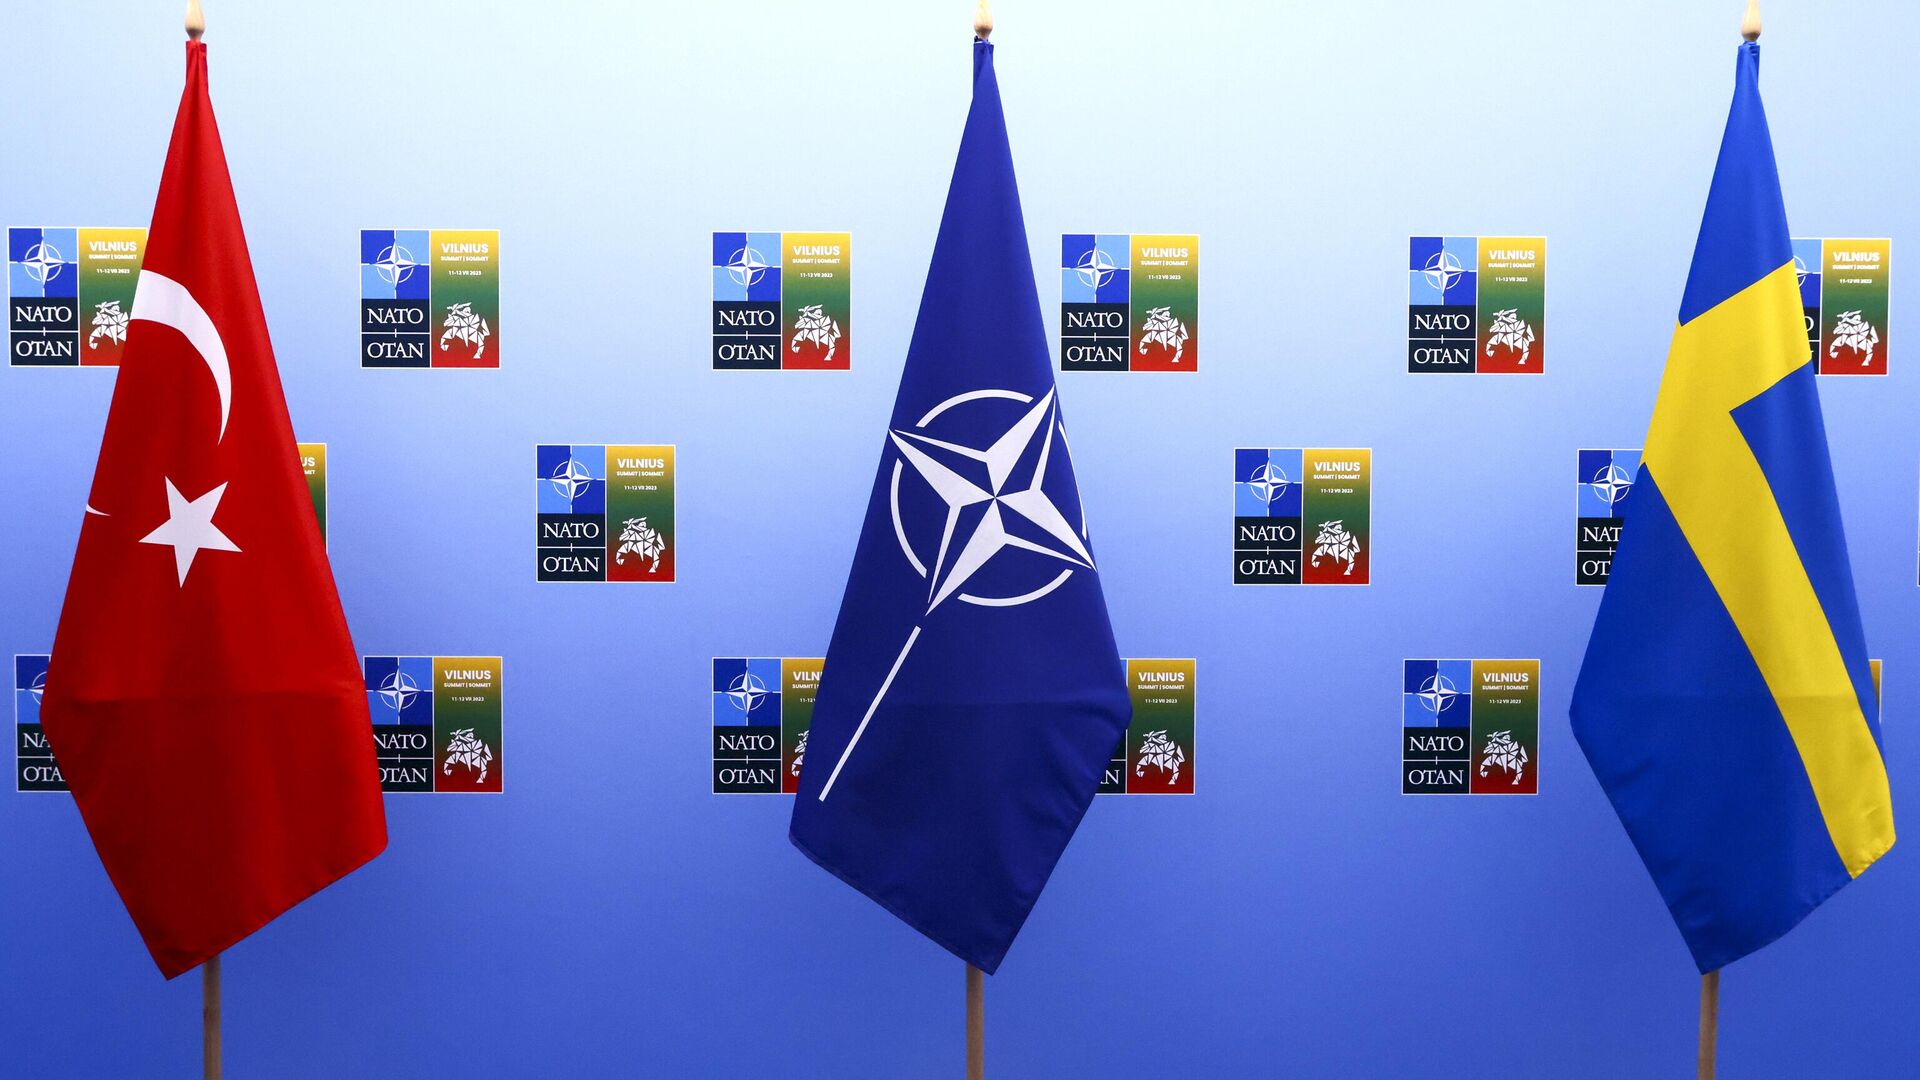 Швеция в вопросе членства в НАТО пока не выполнила данные обещания - Яшар Гюлер